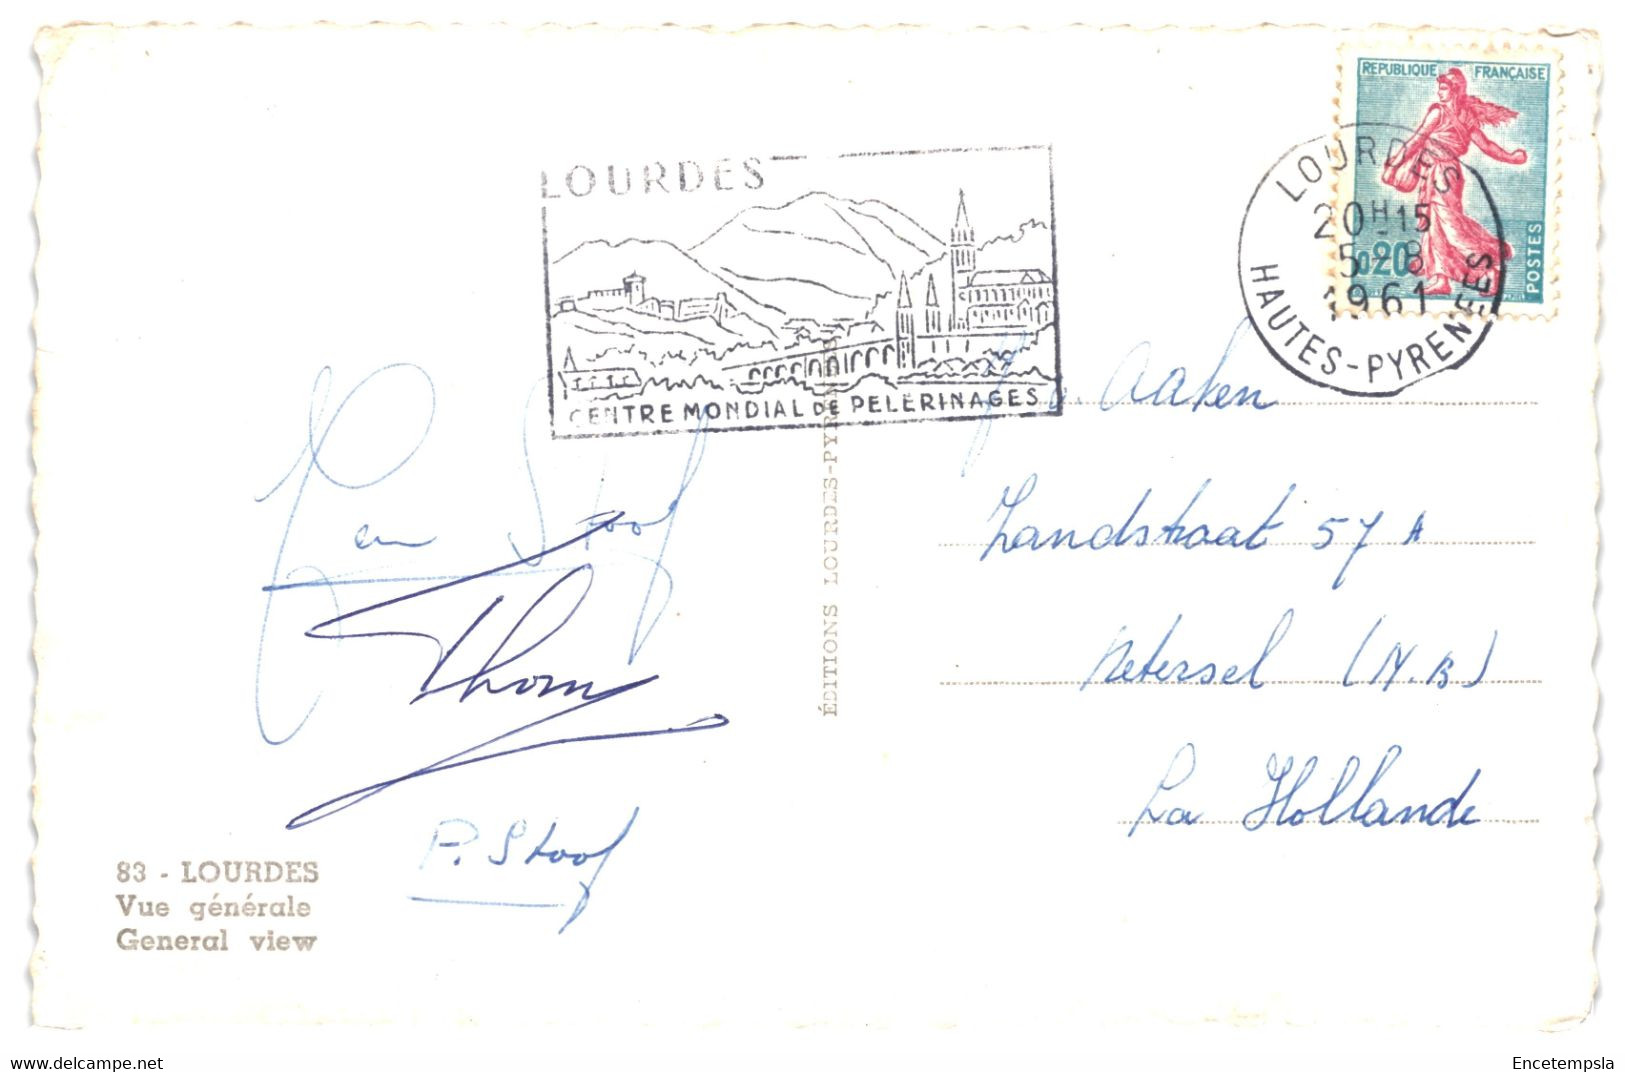 CPA - Carte postale - Lot de 50  cartes postales de France- Lourdes  - VMloud-2